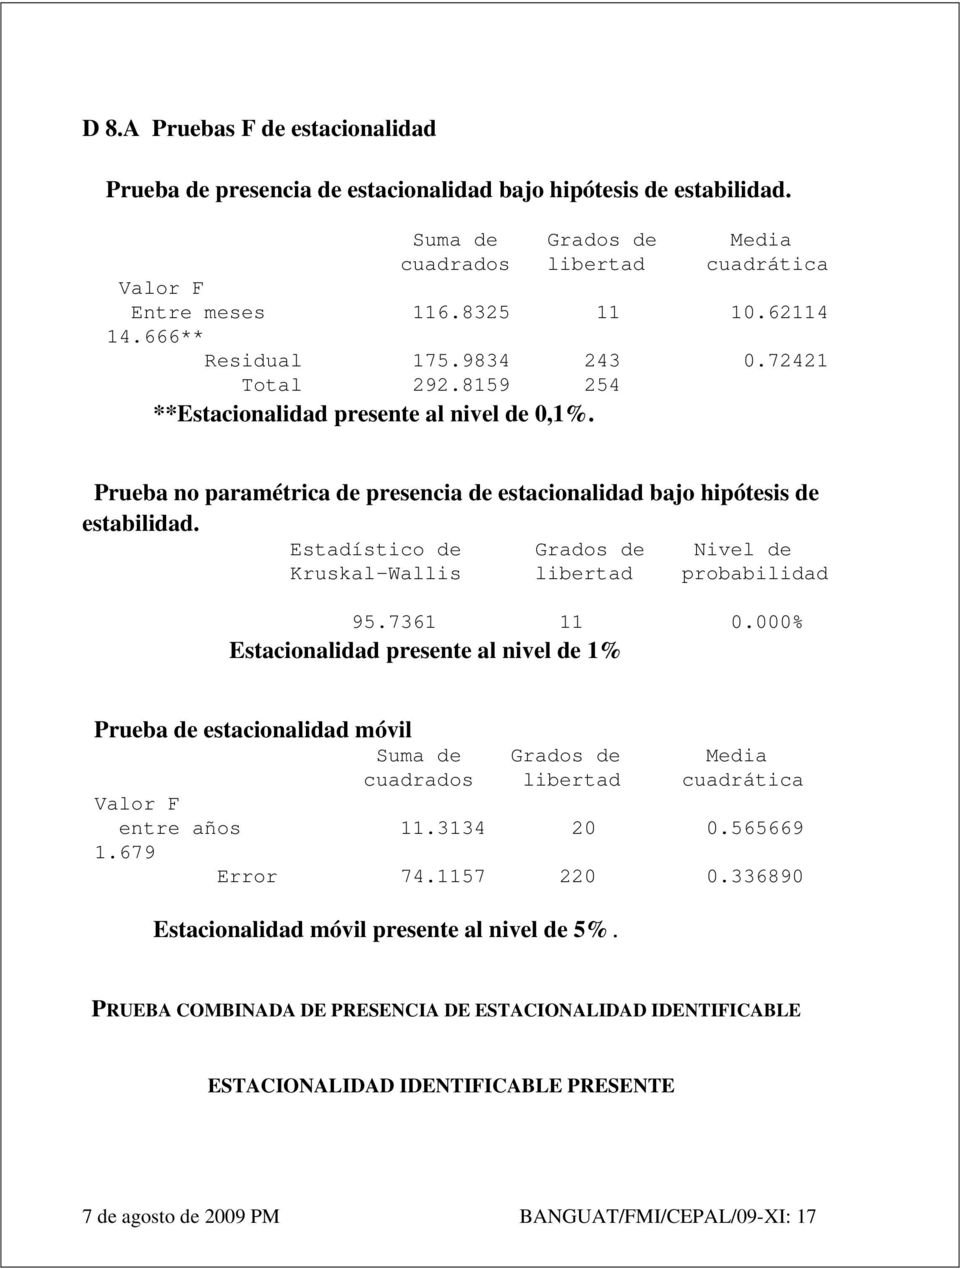 Estadístico de Grados de Nivel de Kruskal-Wallis libertad probabilidad 95.7361 11 0.